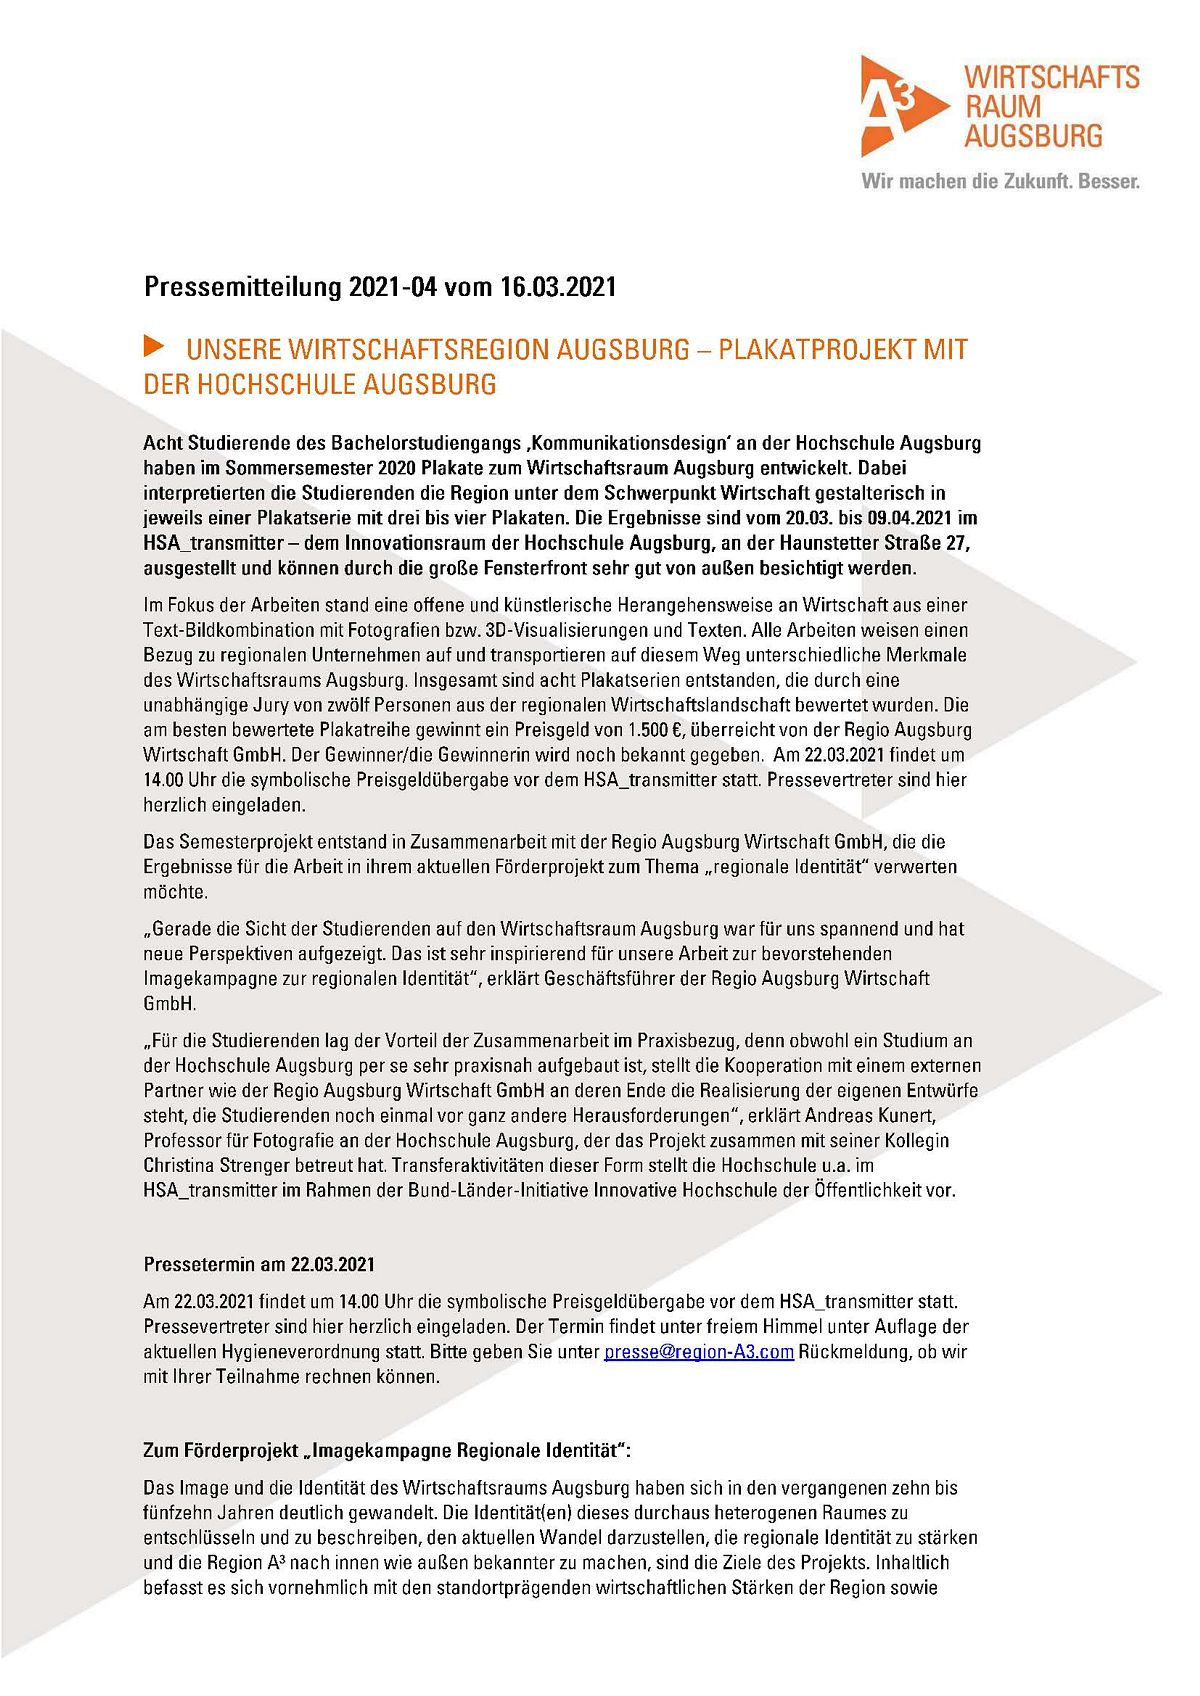 Pressemitteilung der A3 Regio Wirtschaft GmbH vom 16.03.2021